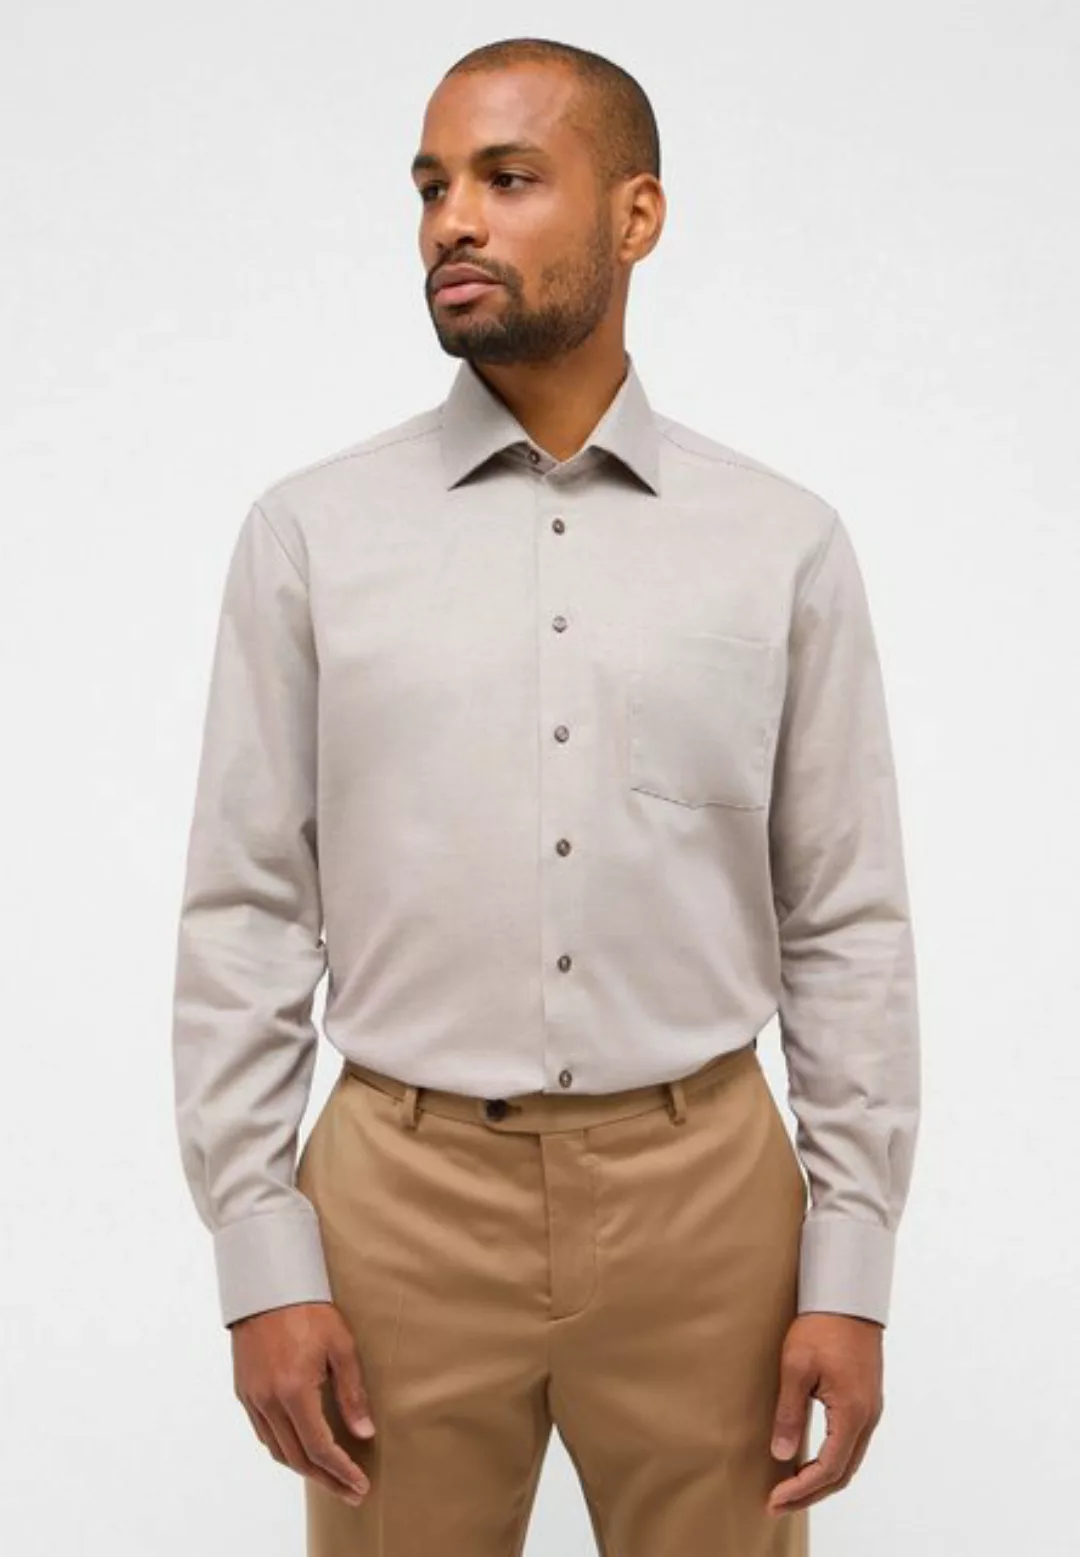 Eterna Langarmhemd - Hemd - modern fit - bügelfrei - ohne Brusttasche günstig online kaufen